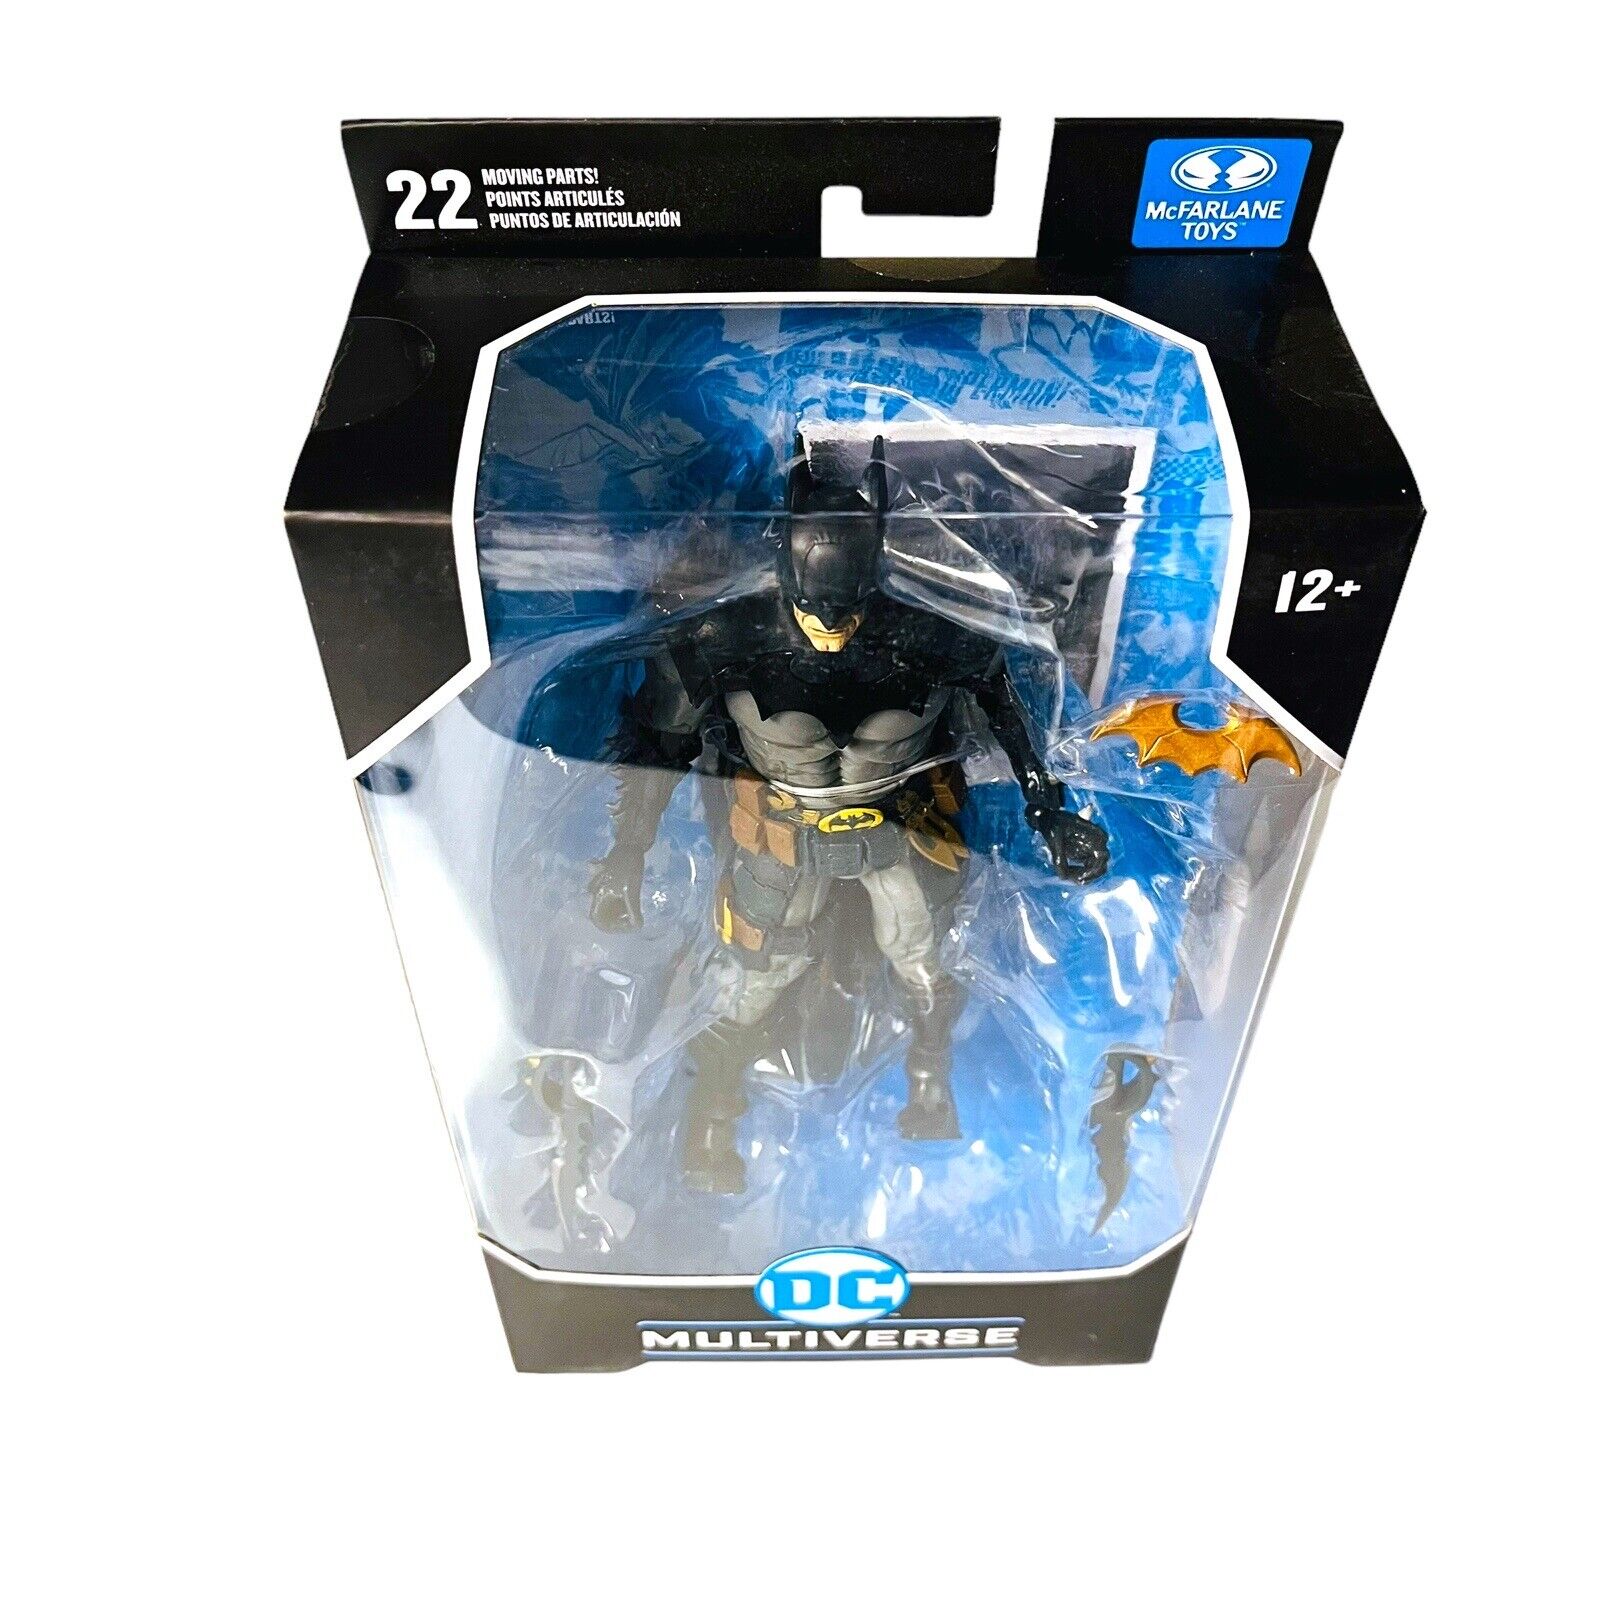 McFarlane Batman DC Multiverse 7 inch Figure Designed by Todd Blue Version FAST McFarlane Toys 15006 - фотография #9